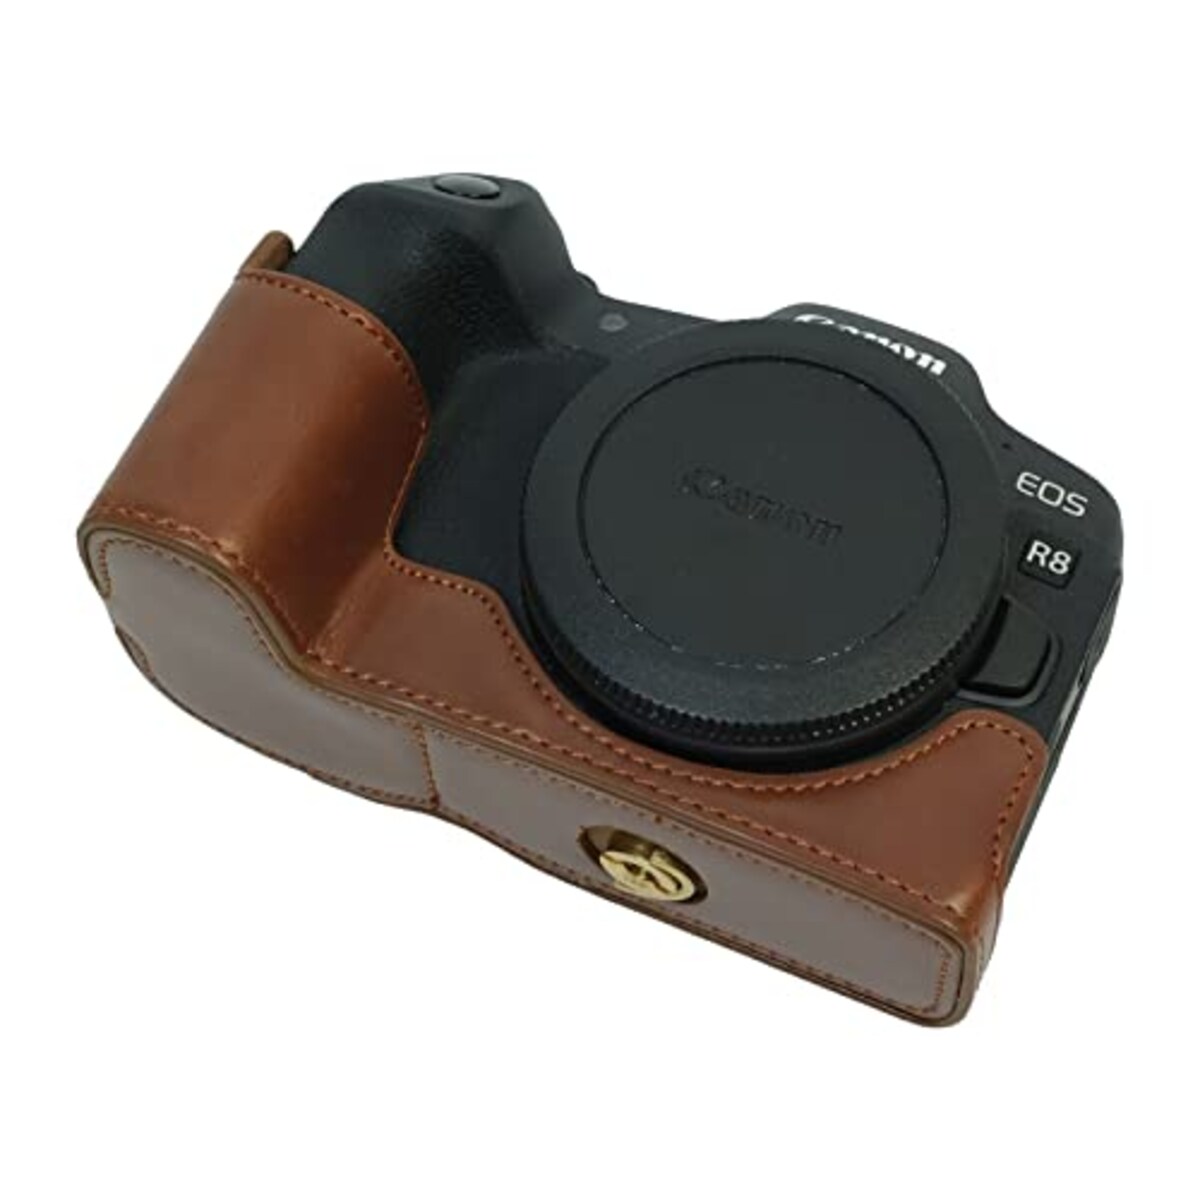  Rieibi Canon EOS R8 ケース、eos r8カメラケース eos r8ボディケース PUレザーカメラハーフケース バッテリー交換可能 三脚設置でき 開閉自由 ベースを保護でき ４色展開 PUレザー EOS R8 保護カバー ハーフケース eos r8 ハーフケースアウトドア撮影用 (ブラウン)画像3 